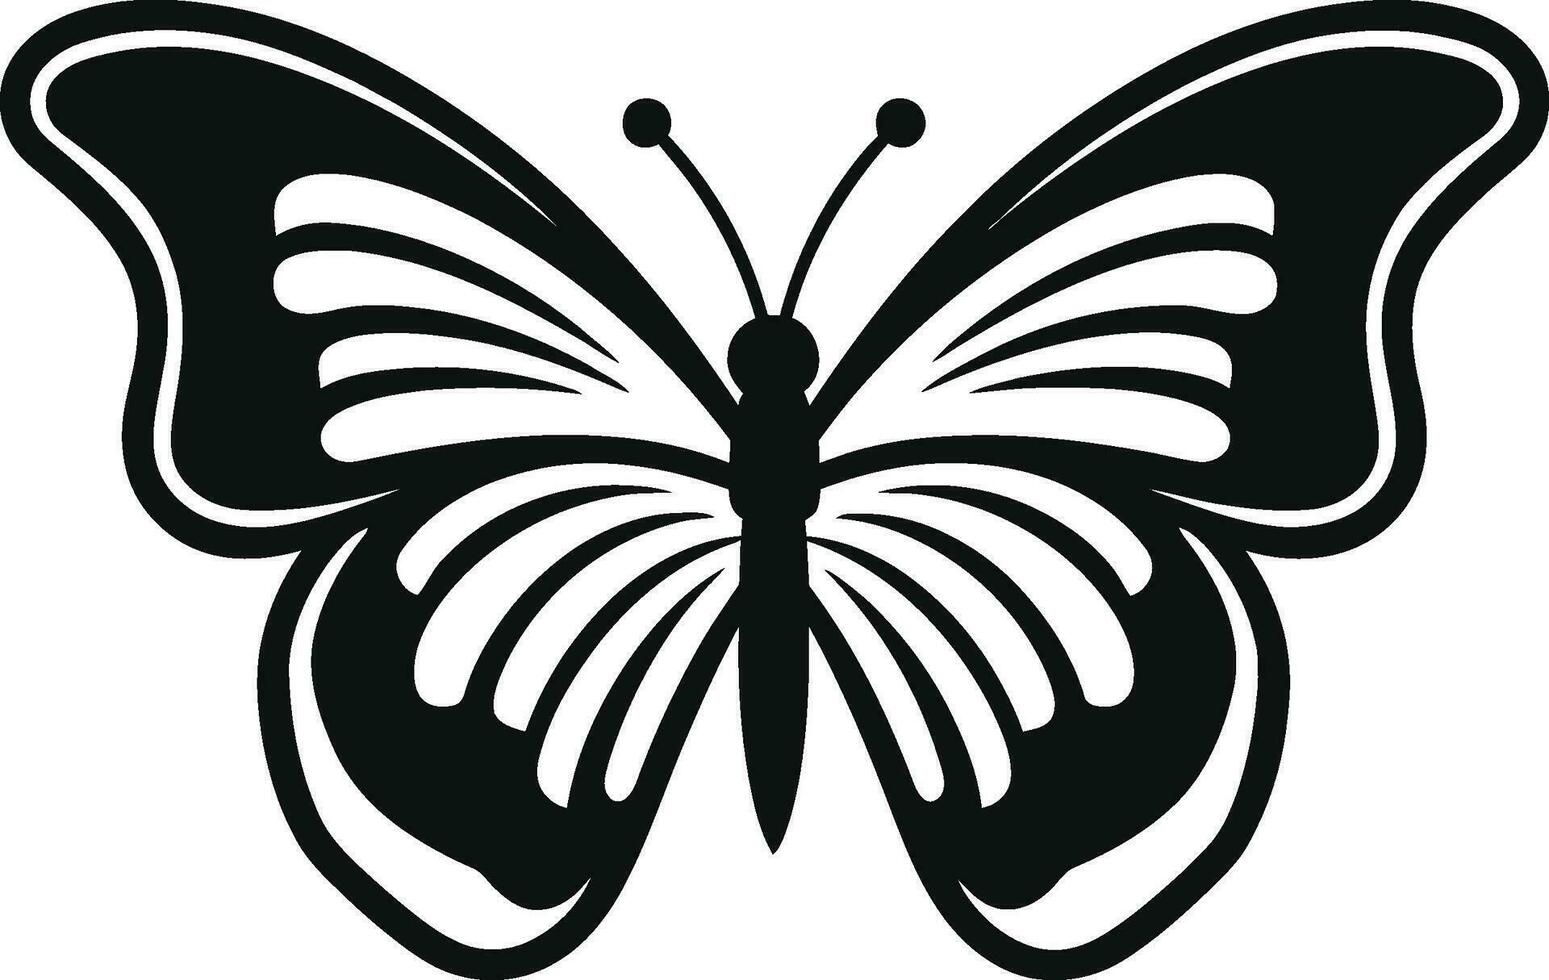 de ébano excelencia agraciado vuelo con alas elegancia mariposa logo maestría vector